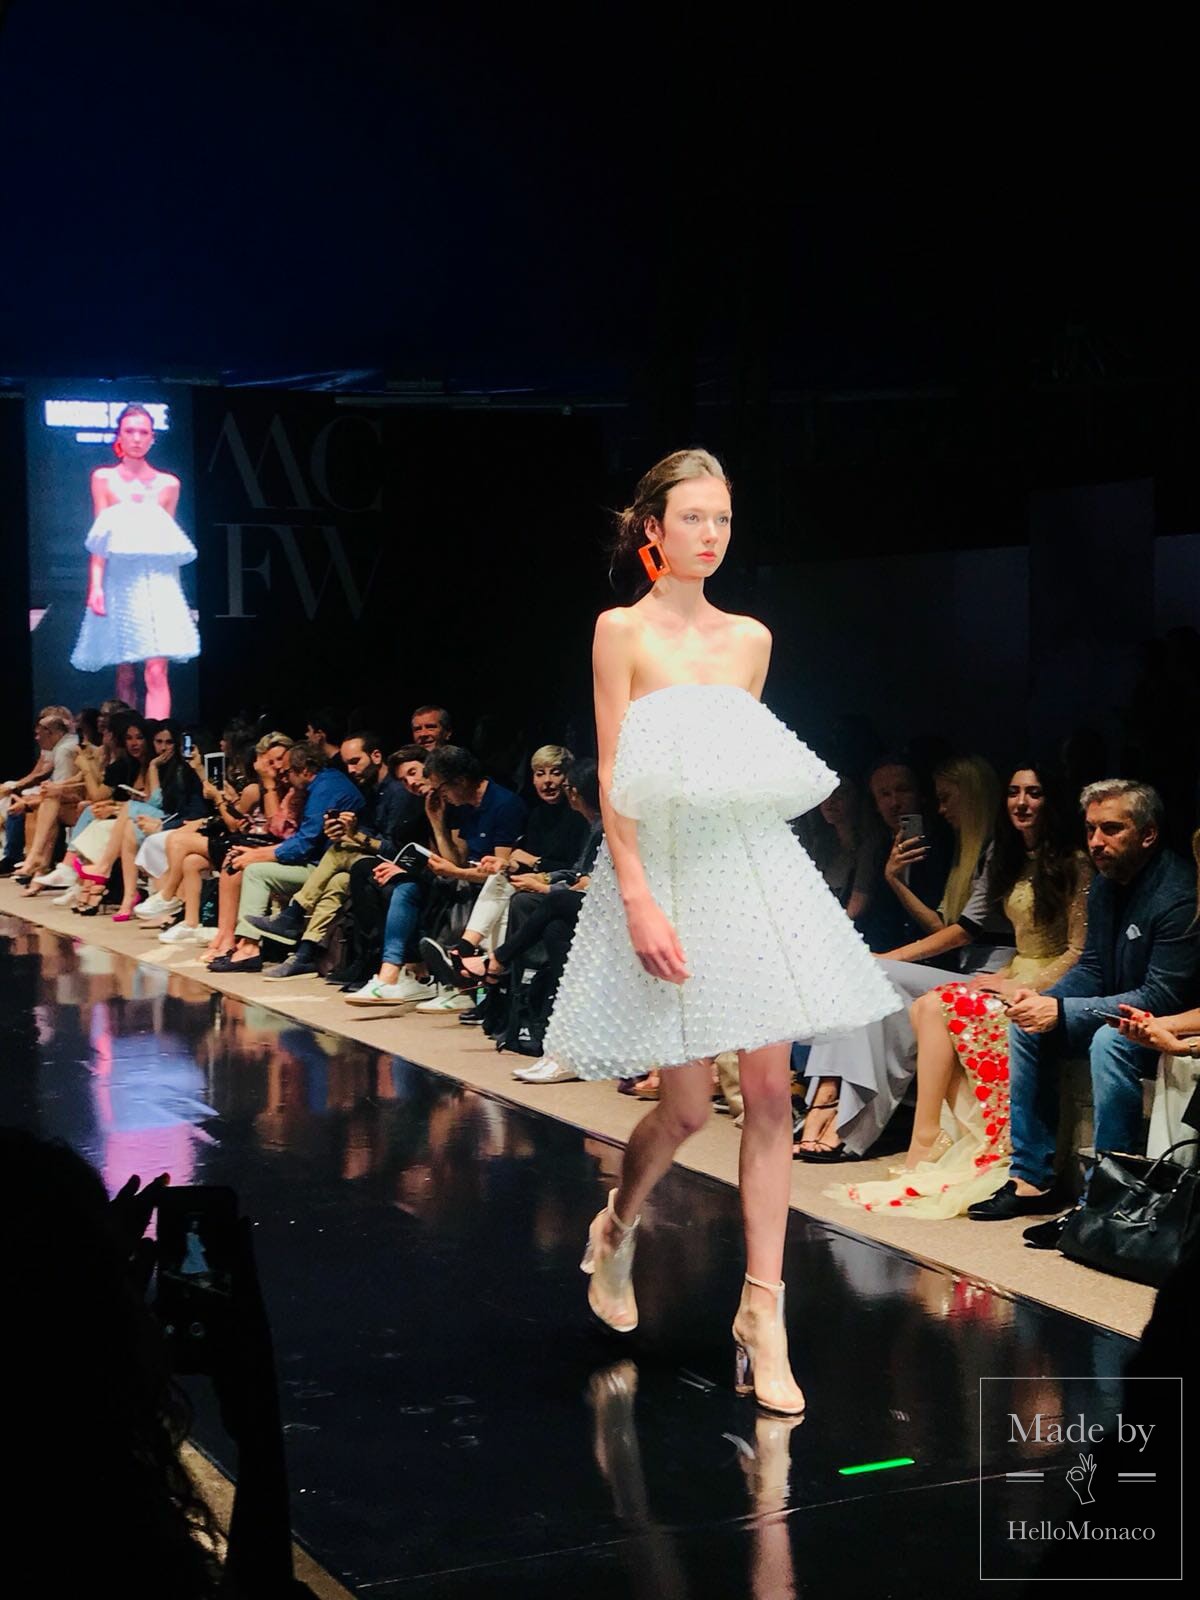 Неделя моды Монте-Карло 2018: будущее моды в устойчивом развитии